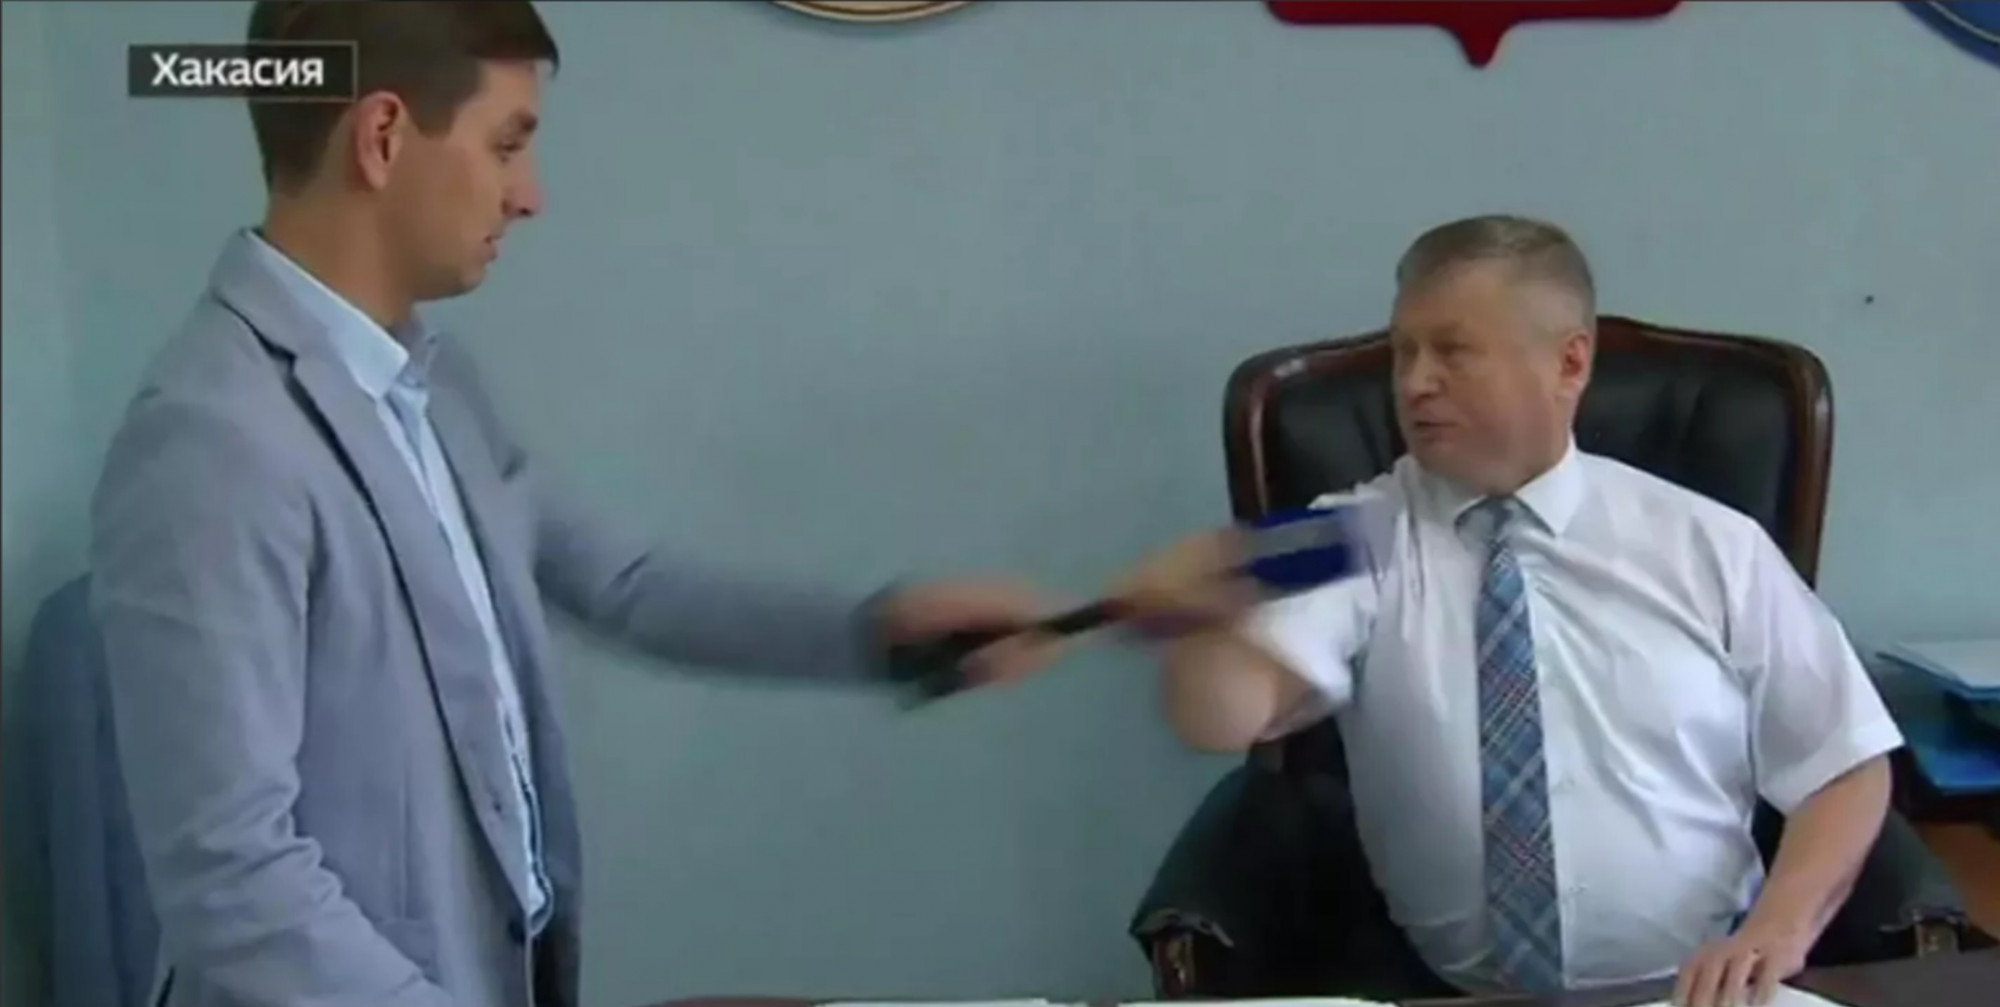 Oroszországban karateversenyt neveztek el arról a hivatalnokról, aki bántalmazott egy újságírót